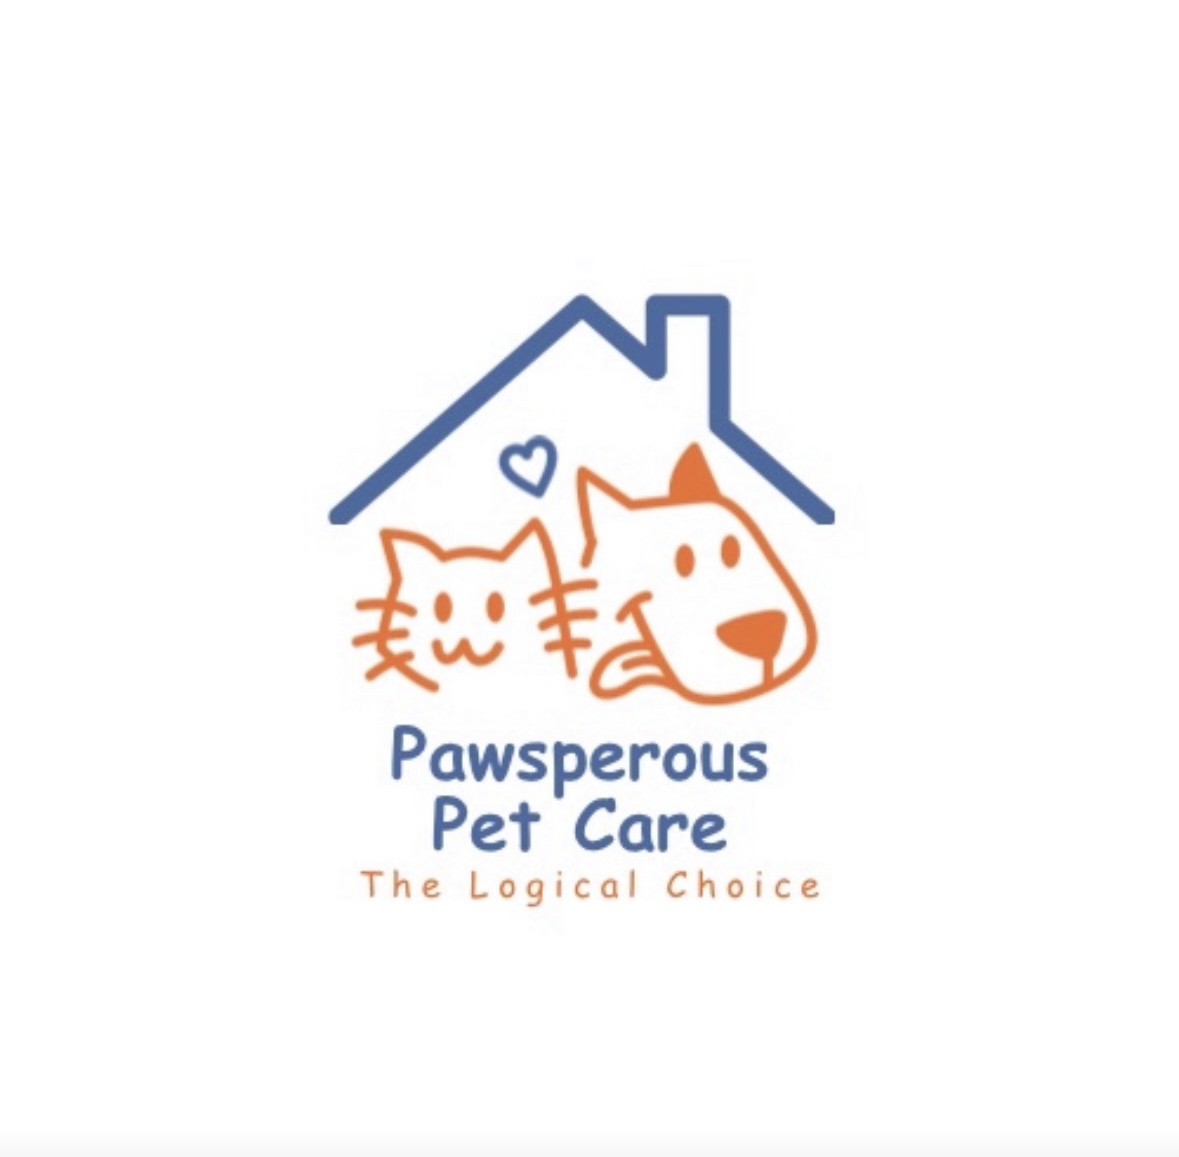 Pawsperous Pet Care